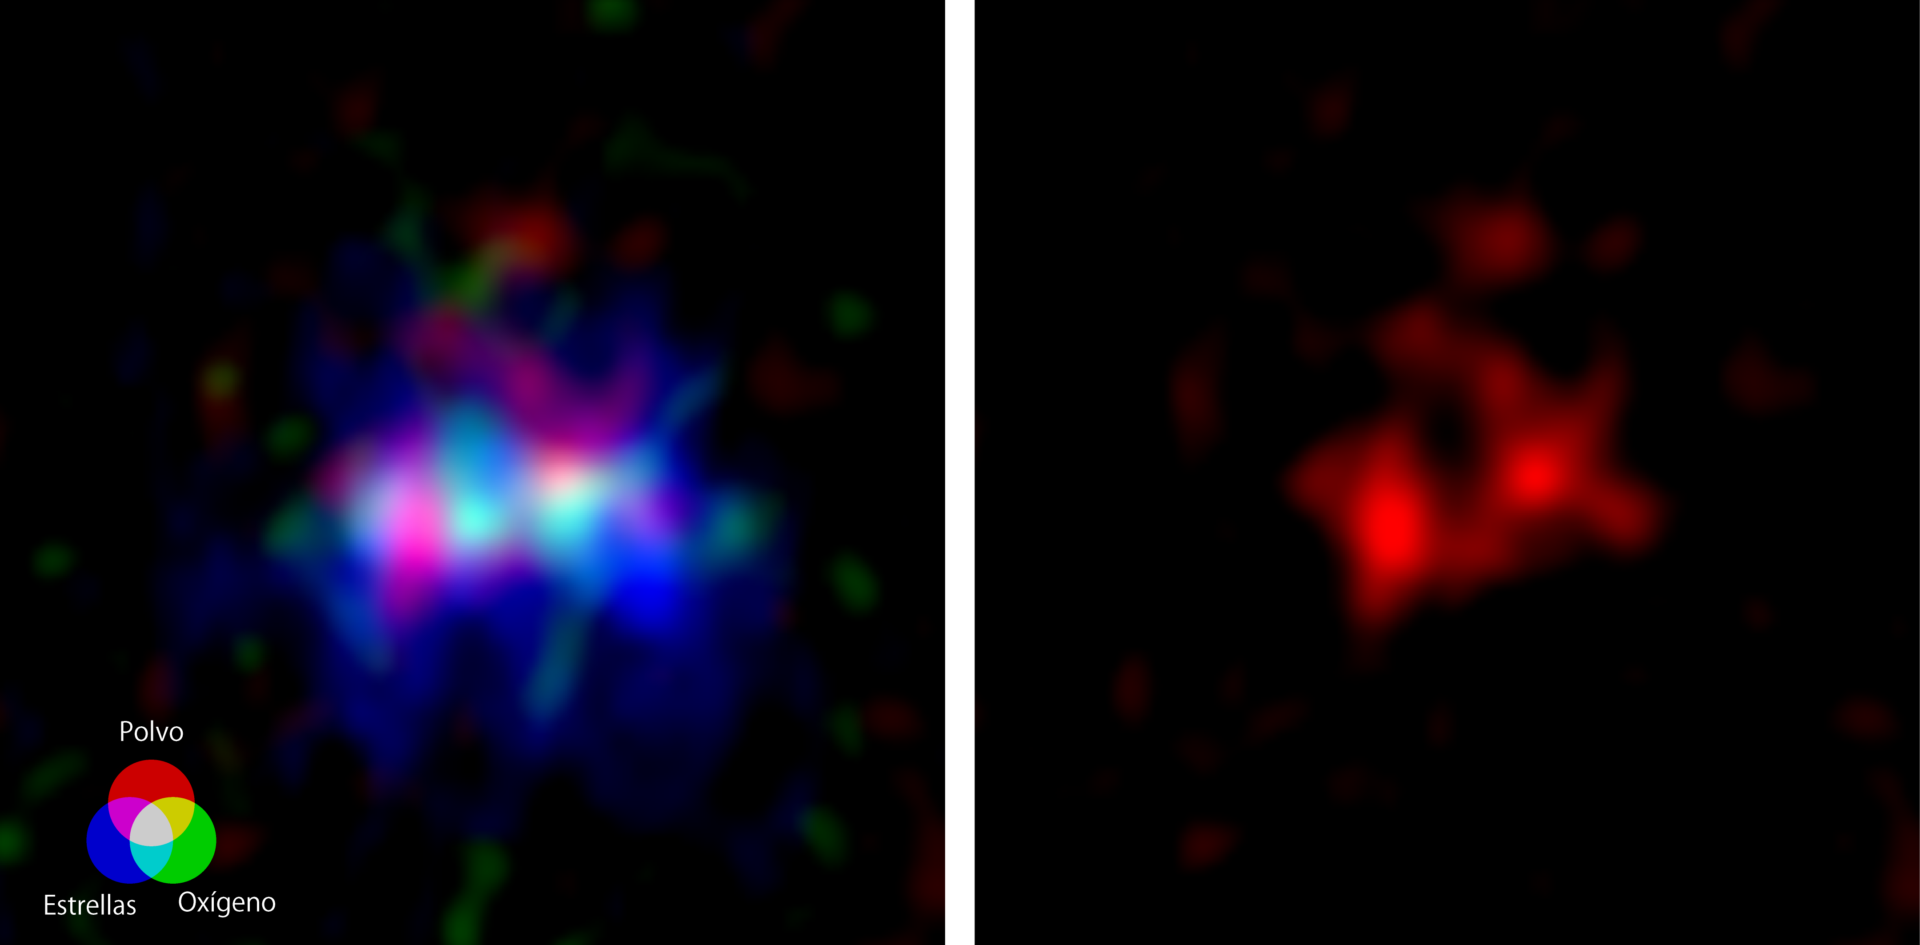 Imagen obtenida con ALMA de la galaxia MACS0416_Y1, ubicada a 13.200 millones de años luz, donde se encuentra la nebulosa oscura más lejana detectada a la fecha. La imagen abarca cerca de 15.000 años luz hacia cada lado. (Izquierda) Imágenes de radio obtenidas por ALMA donde se aprecia la nebulosa oscura (emitiendo ondas de radio del polvo, mostradas en rojo) y la nebulosa de emisión (emitiendo ondas de radio de oxígeno, en verde), junto con imágenes de estrellas capturadas por el Telescopio Espacial Hubble (en azul). Créditos: ALMA (ESO/NAOJ/NRAO), Y. Tamura et al., Telescopio Espacial Hubble de la NASA/ESA. (Derecha) Imagen obtenida por ALMA donde se aprecian las ondas de radio emitidas por el polvo presente al interior de la nebulosa oscura. En el centro se ve una cavidad elíptica que podría ser una superburbuja. Créditos: ALMA (ESO/NAOJ/NRAO), Y. Tamura et al.